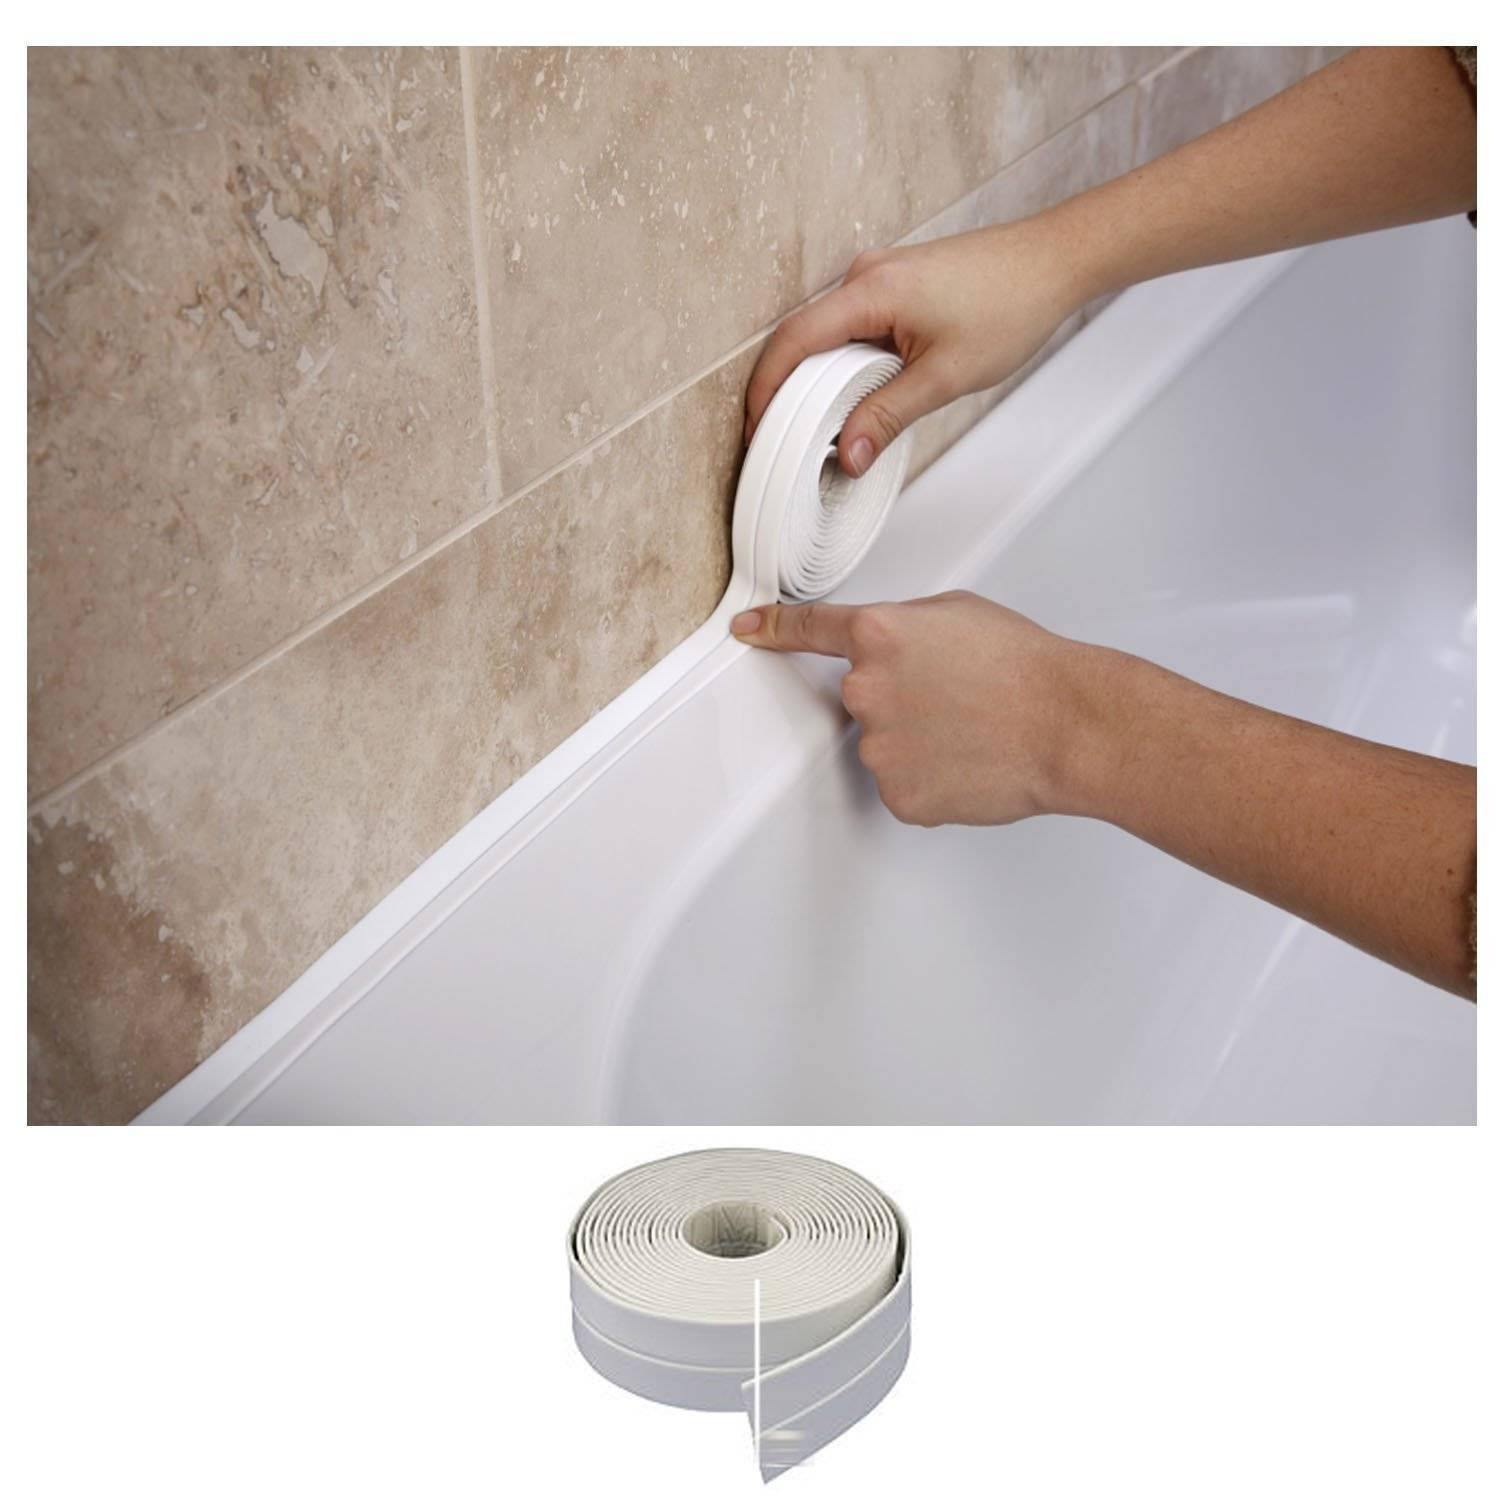 Чем можно заделать щель между ванной и стеной — материалы и пошаговые инструкции по каждому способу